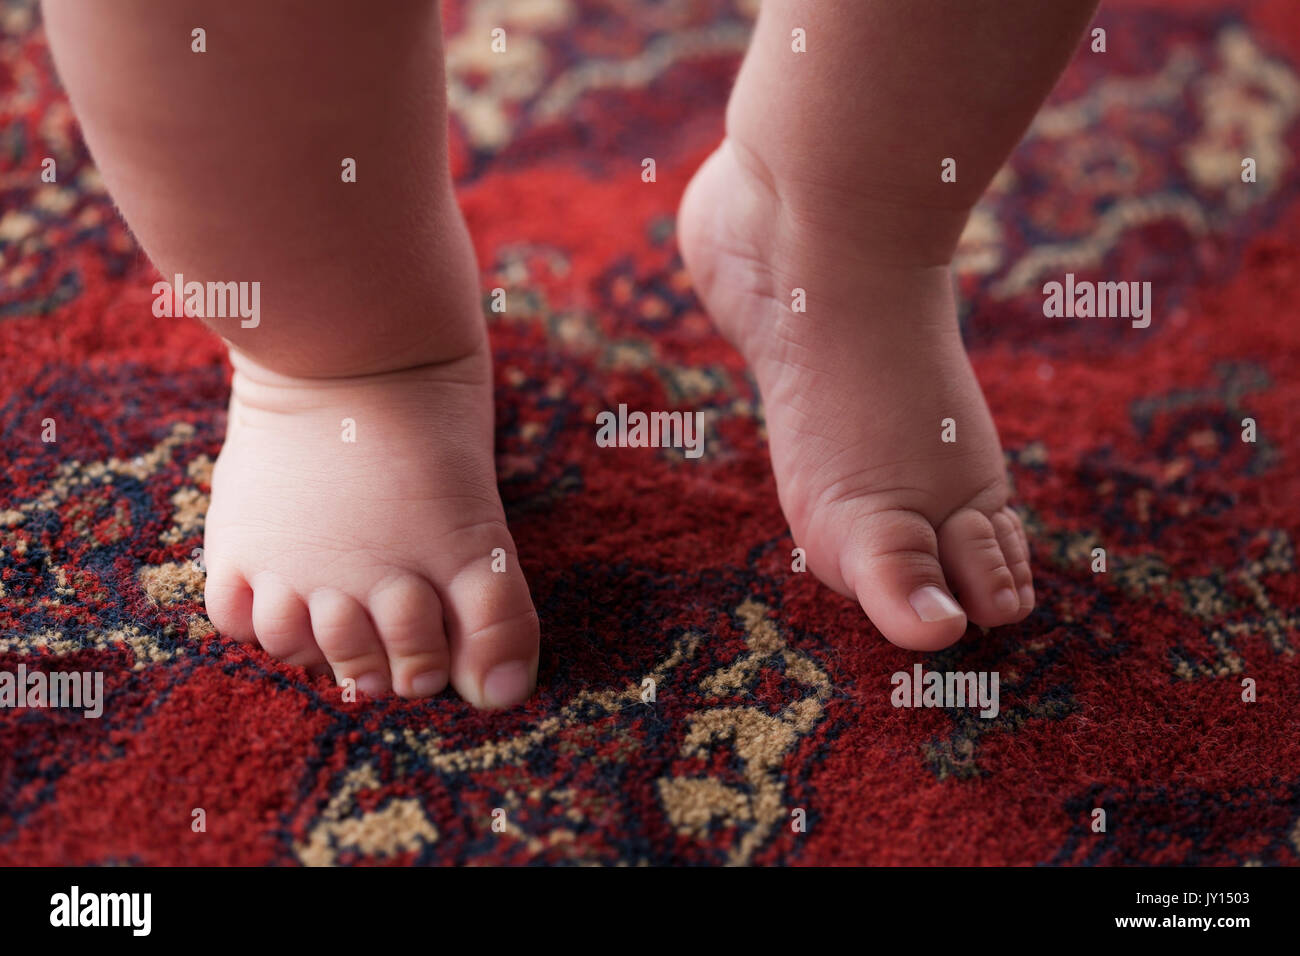 Pieds de Hispanic baby boy sur tapis Banque D'Images